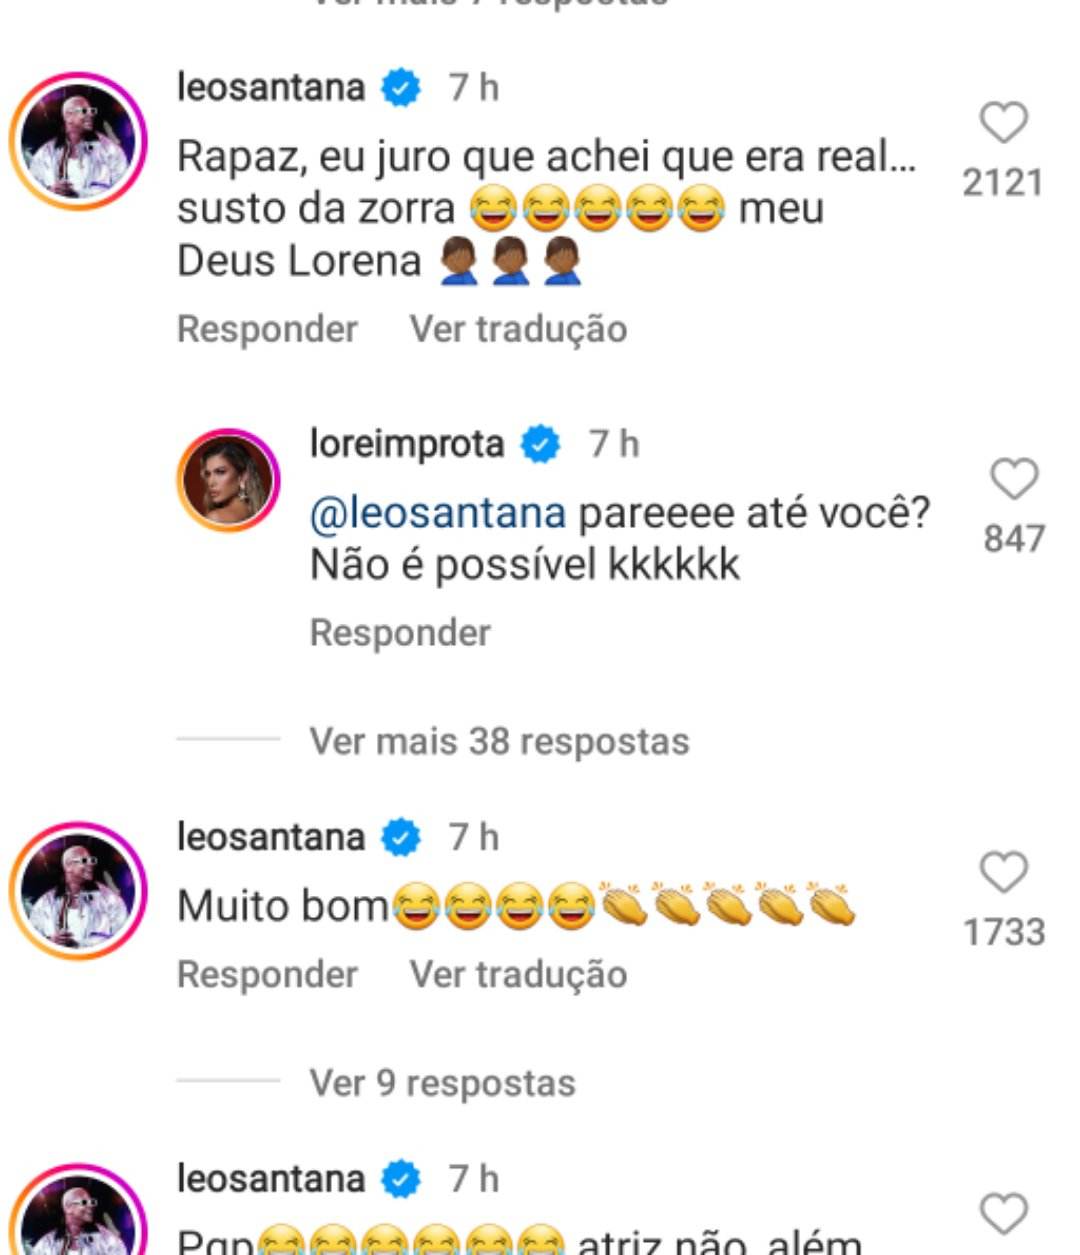 Leo Santana comenta pronunciamento de Lore Improta